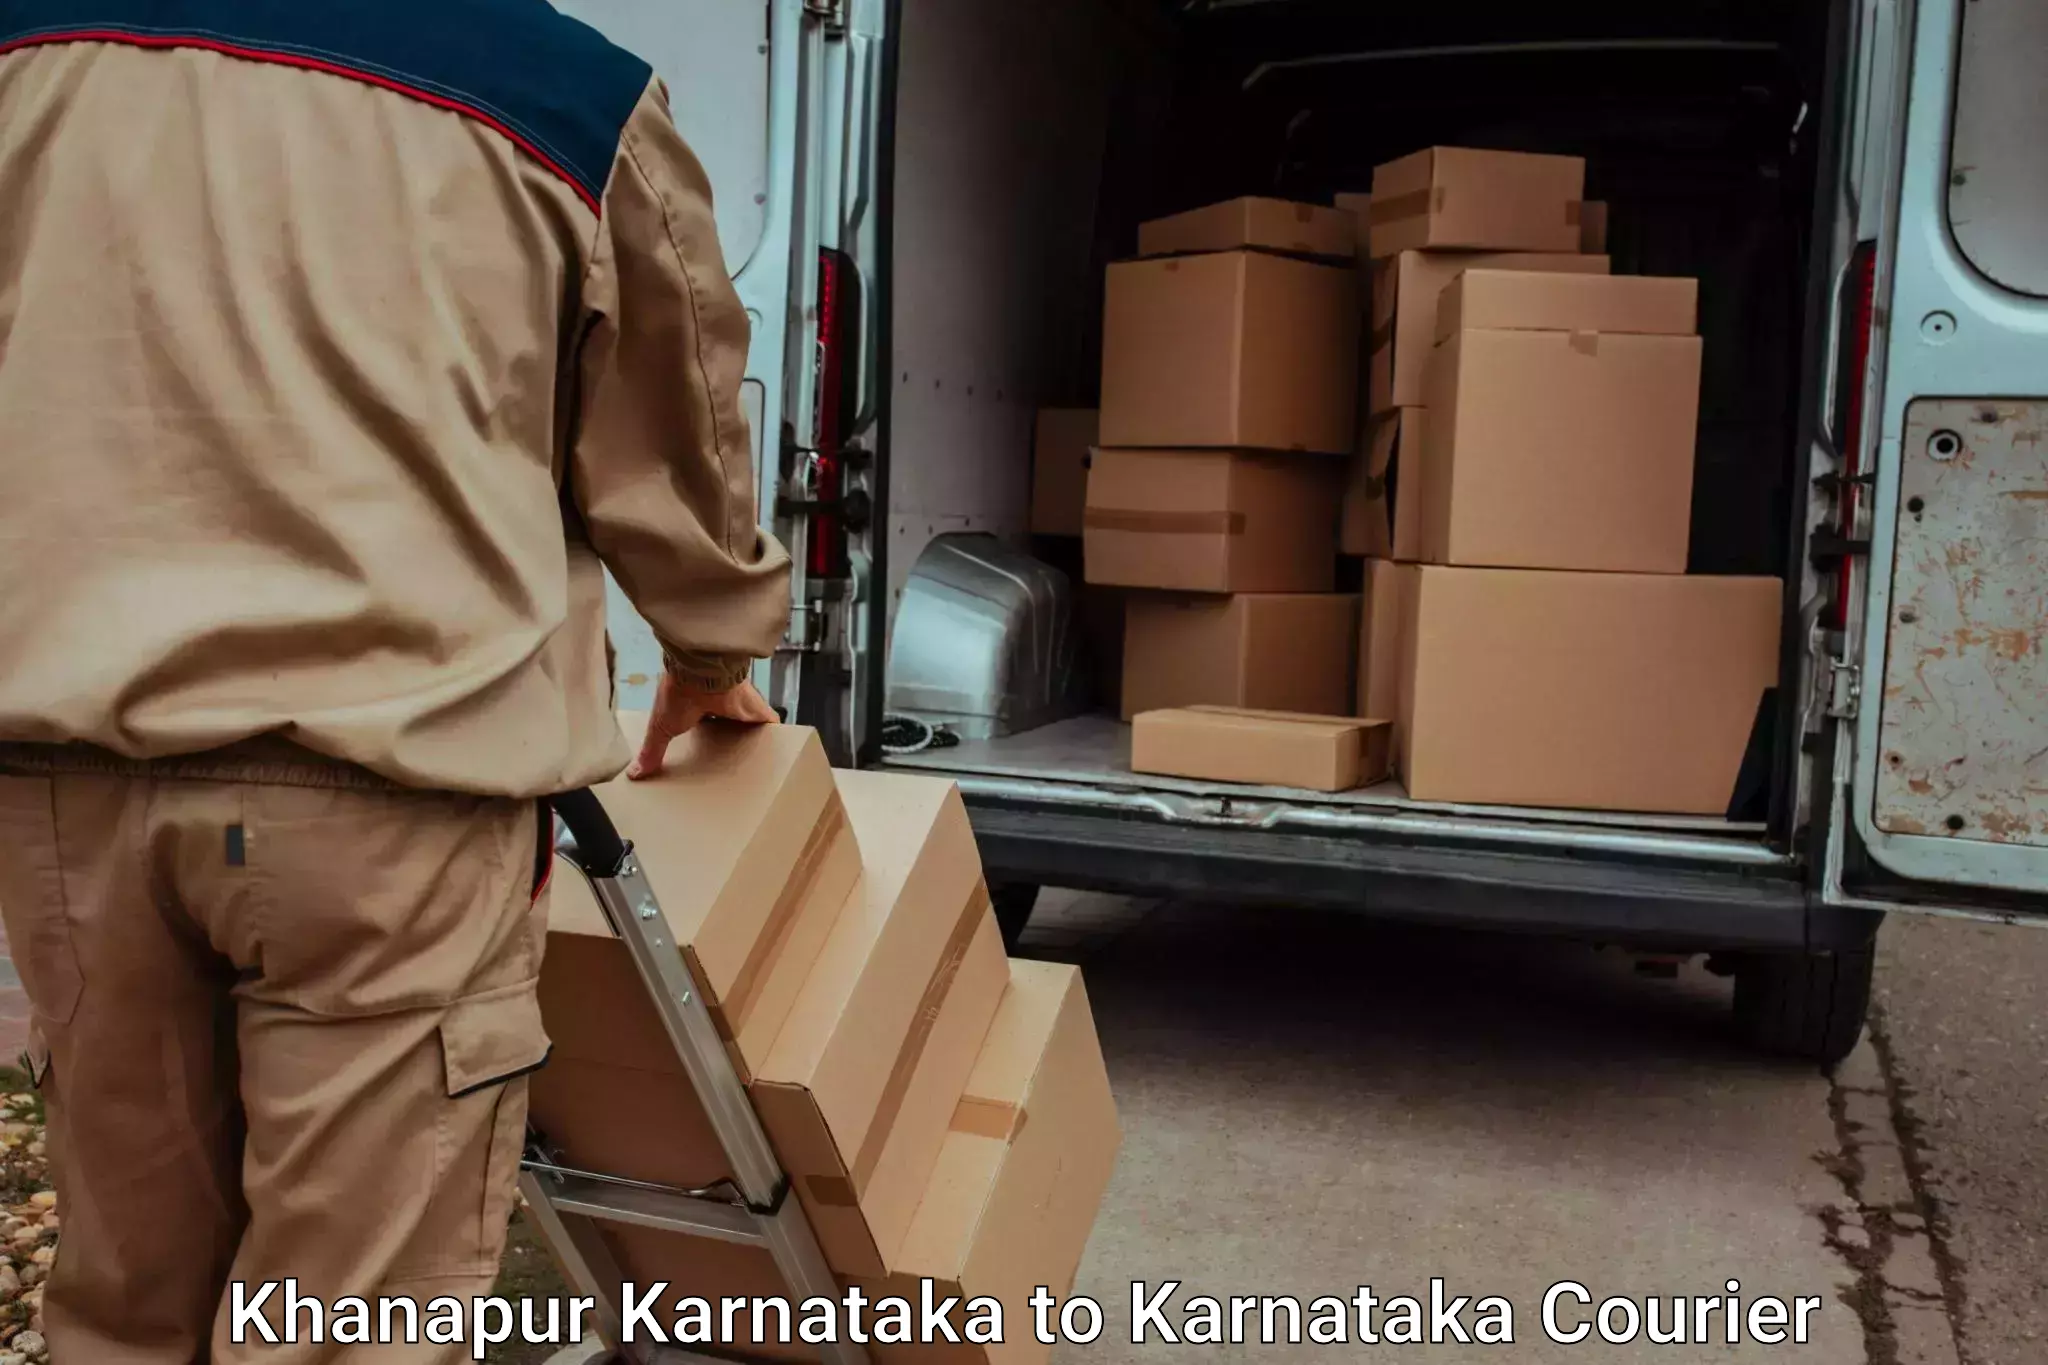 Trusted moving company Khanapur Karnataka to Bethamangala